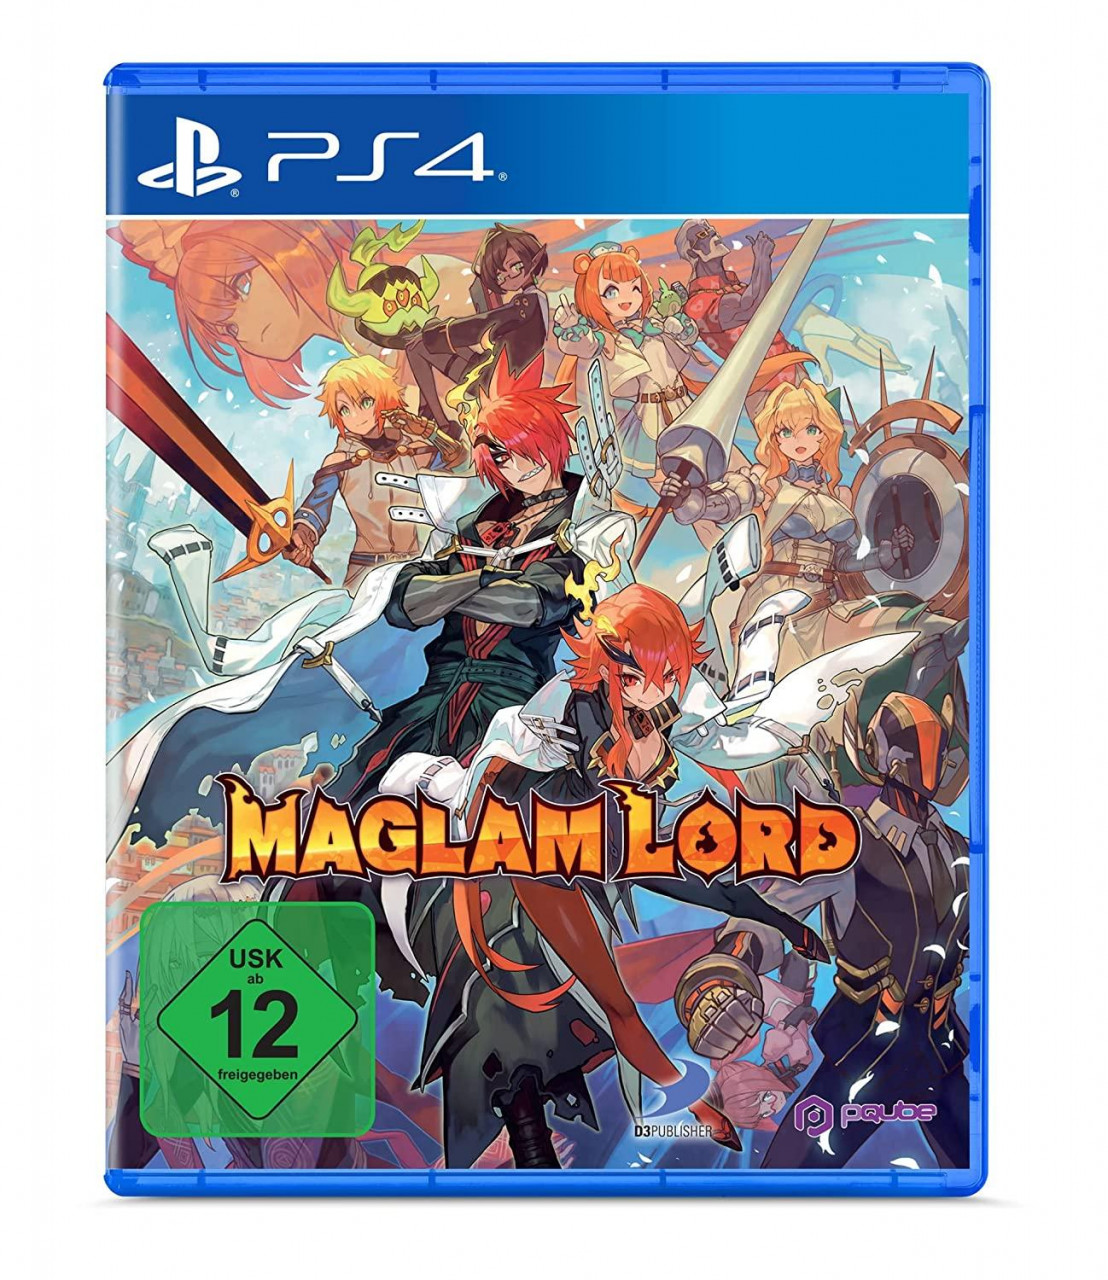 Maglam Lord (Playstation 4, NEU)